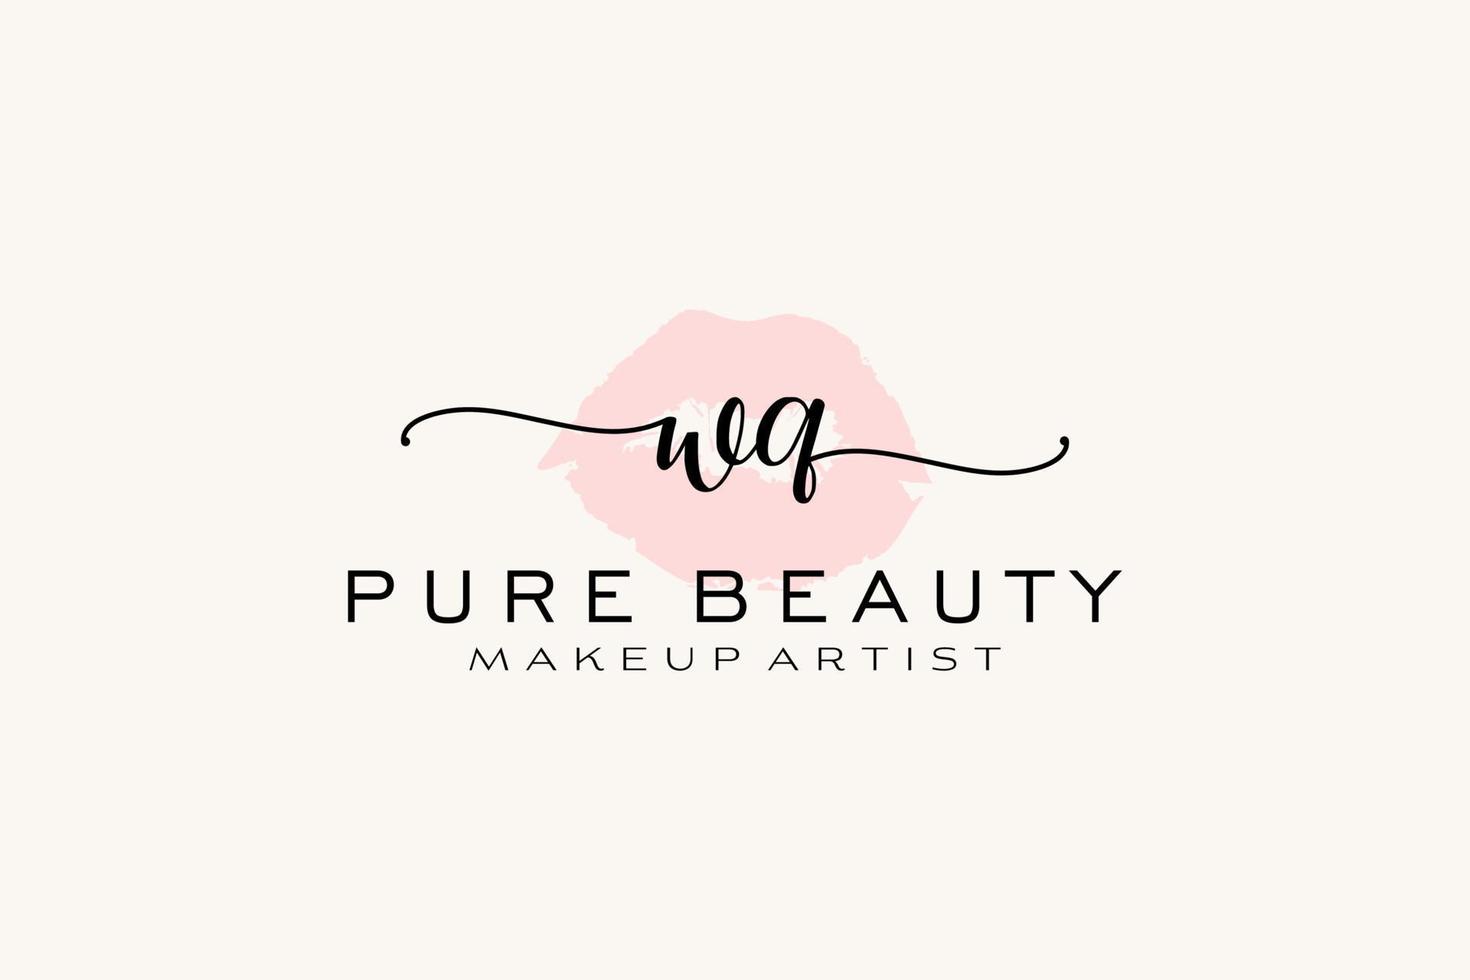 création initiale de logo préfabriqué pour les lèvres aquarelles wq, logo pour la marque d'entreprise de maquilleur, création de logo de boutique de beauté blush, logo de calligraphie avec modèle créatif. vecteur